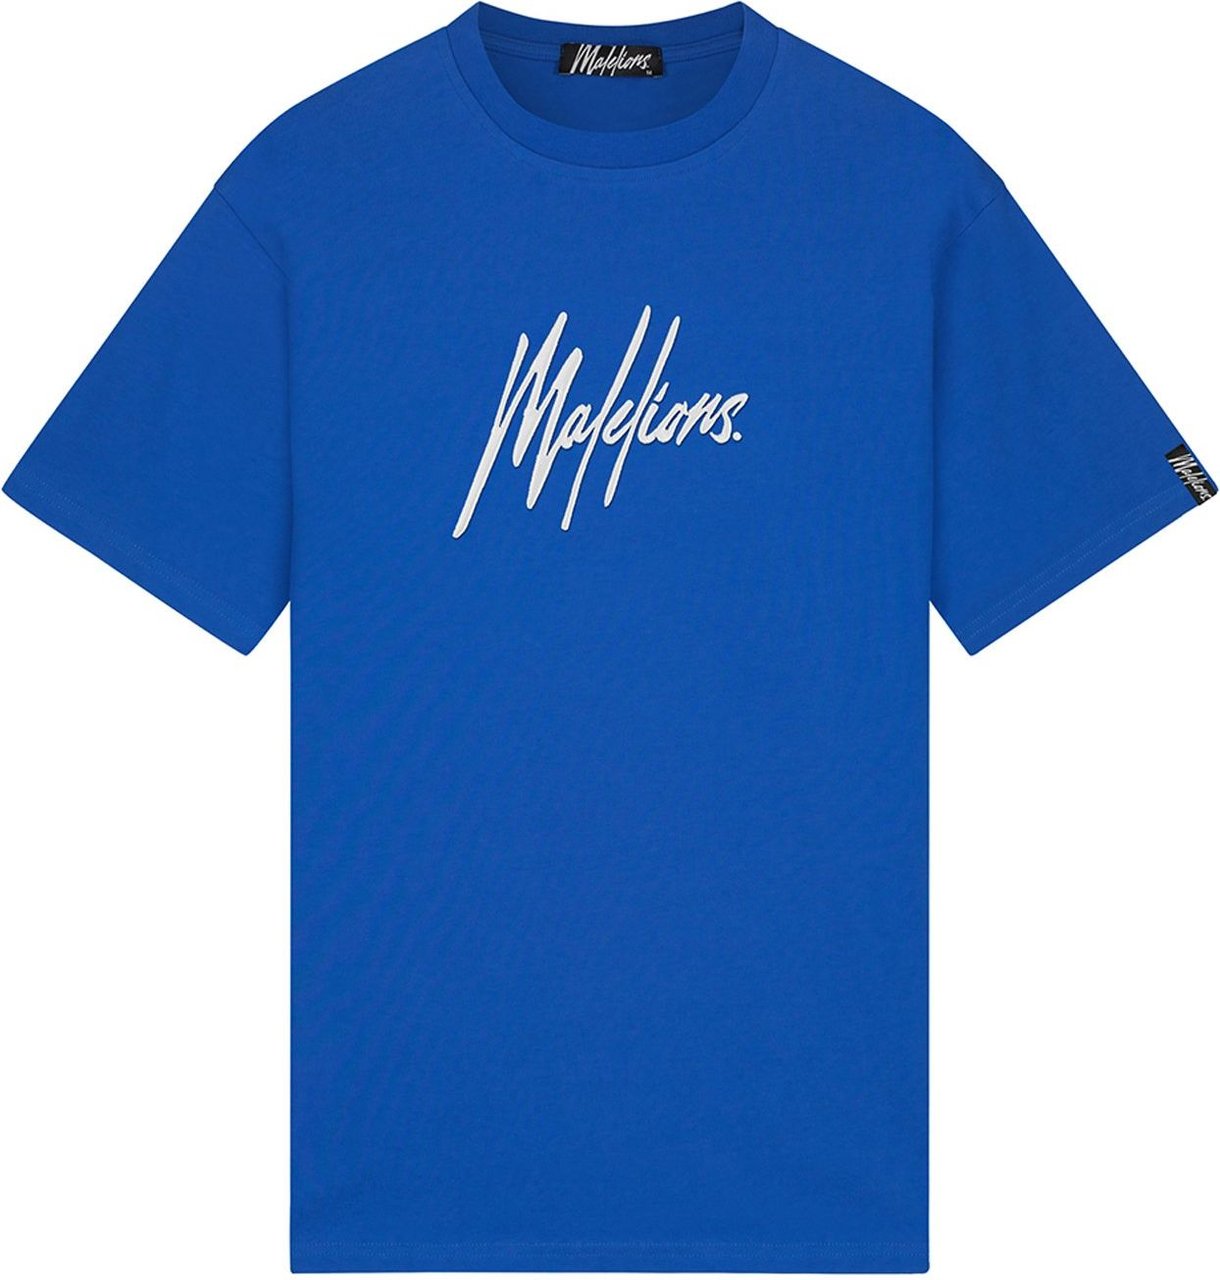 Malelions Essentials Regular T-Shirt - Cobalt Blauw